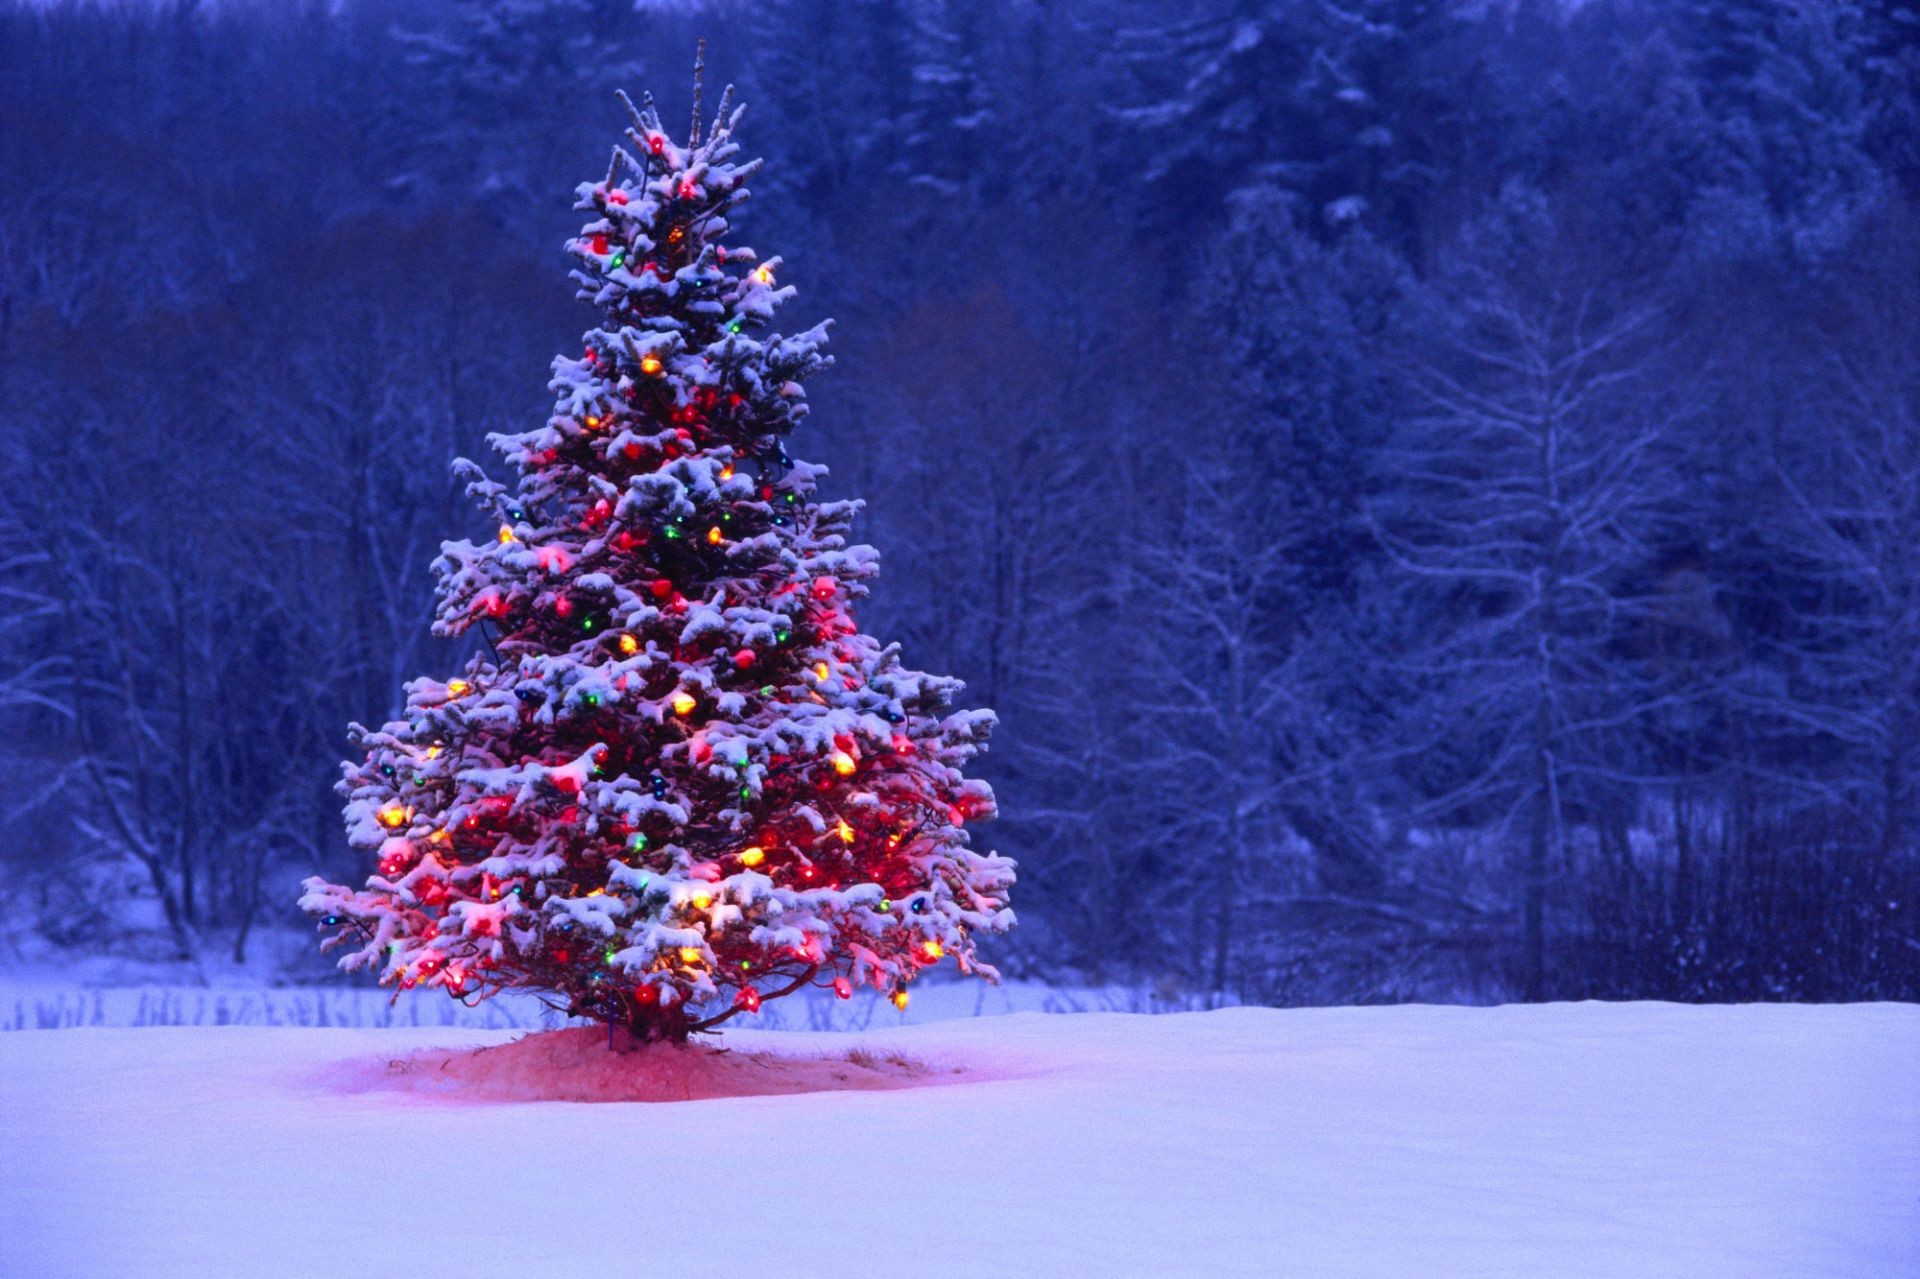 новый год зима снег рождество дерево мороз сезон холодная сосна древесины замороженные эвергрин пихта филиал хвойные снежинка пейзаж погода на открытом воздухе лед